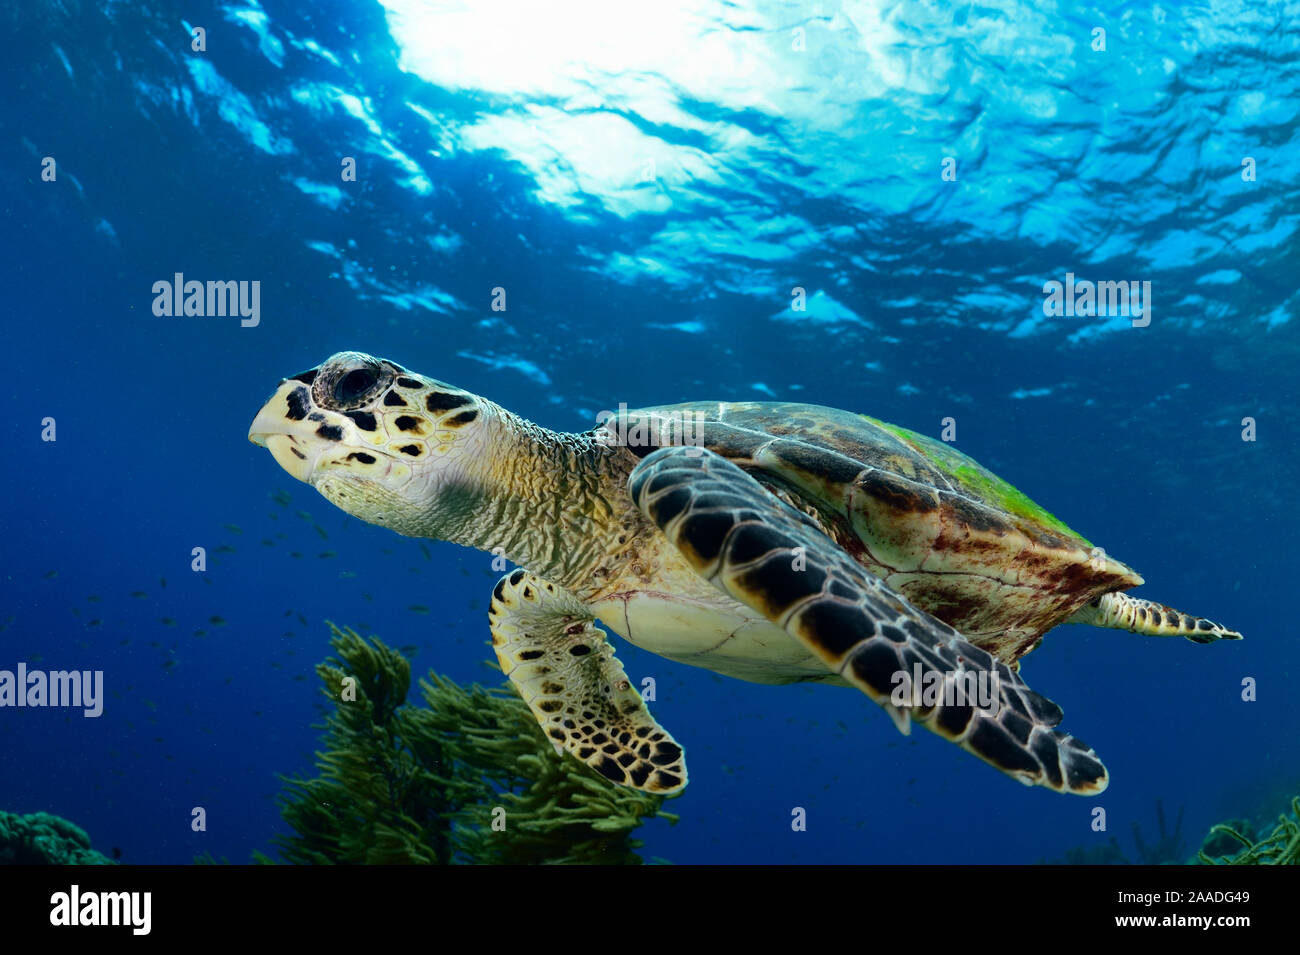 La tortue imbriquée (Eretmochelys imbricata) Bonaire, Antilles néerlandaises sous le vent, dans la région des Caraïbes, Antilles néerlandaises Banque D'Images